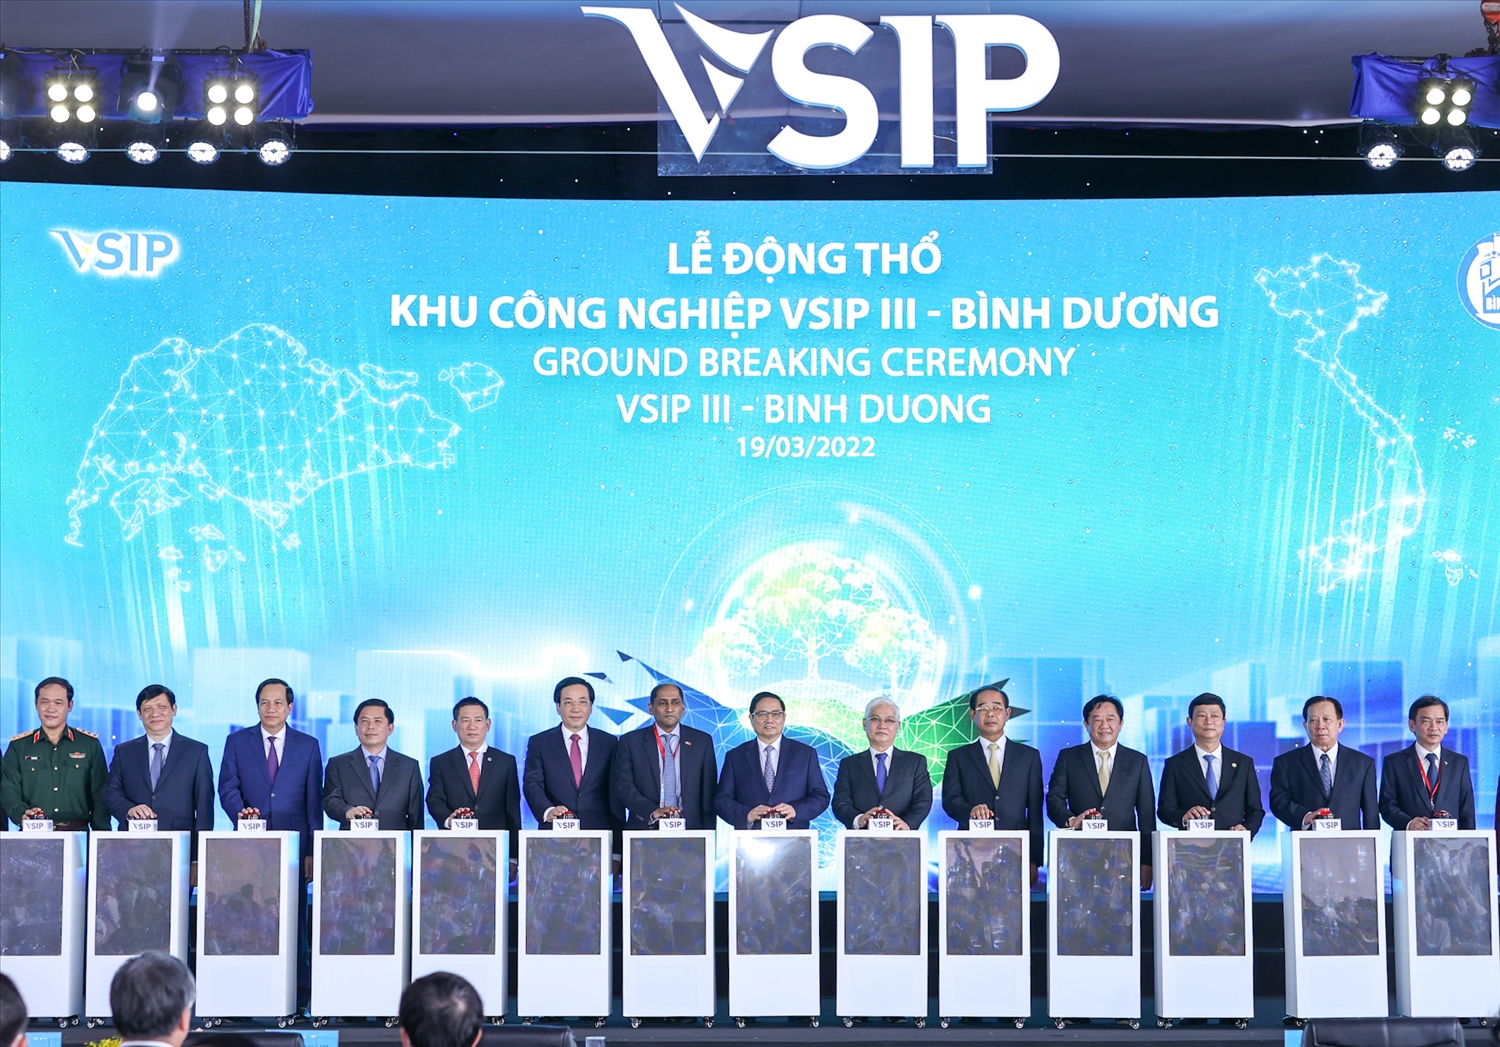 Thủ tướng cùng các đại biểu thực hiện nghi thức Lễ động thổ đầu tư xây dựng Khu công nghiệp VSIP III - Ảnh: VGP/Nhật Bắc